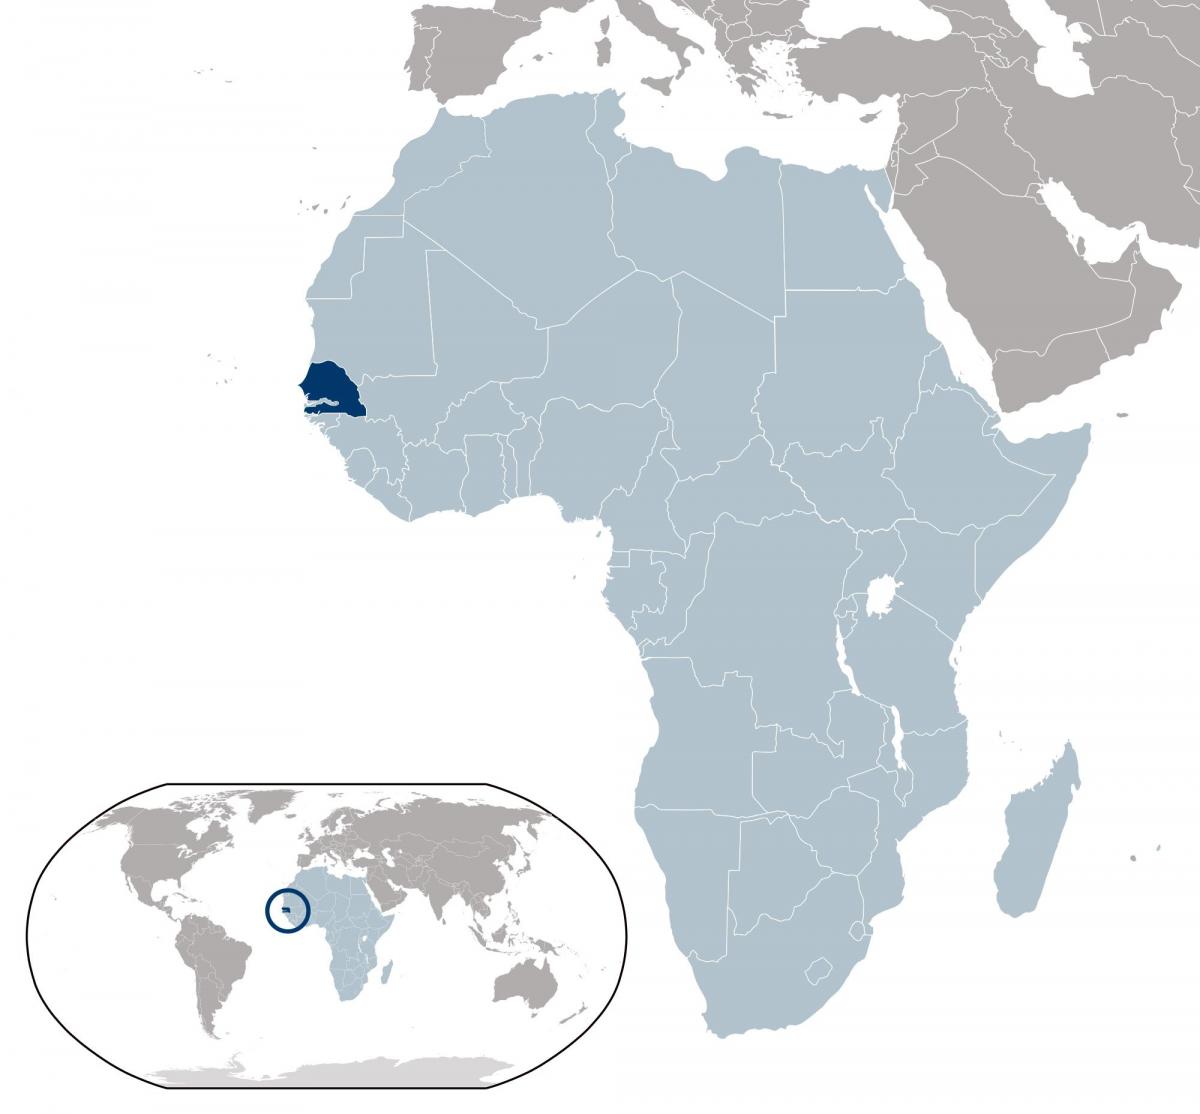 नक्शा सेनेगल के स्थान पर दुनिया